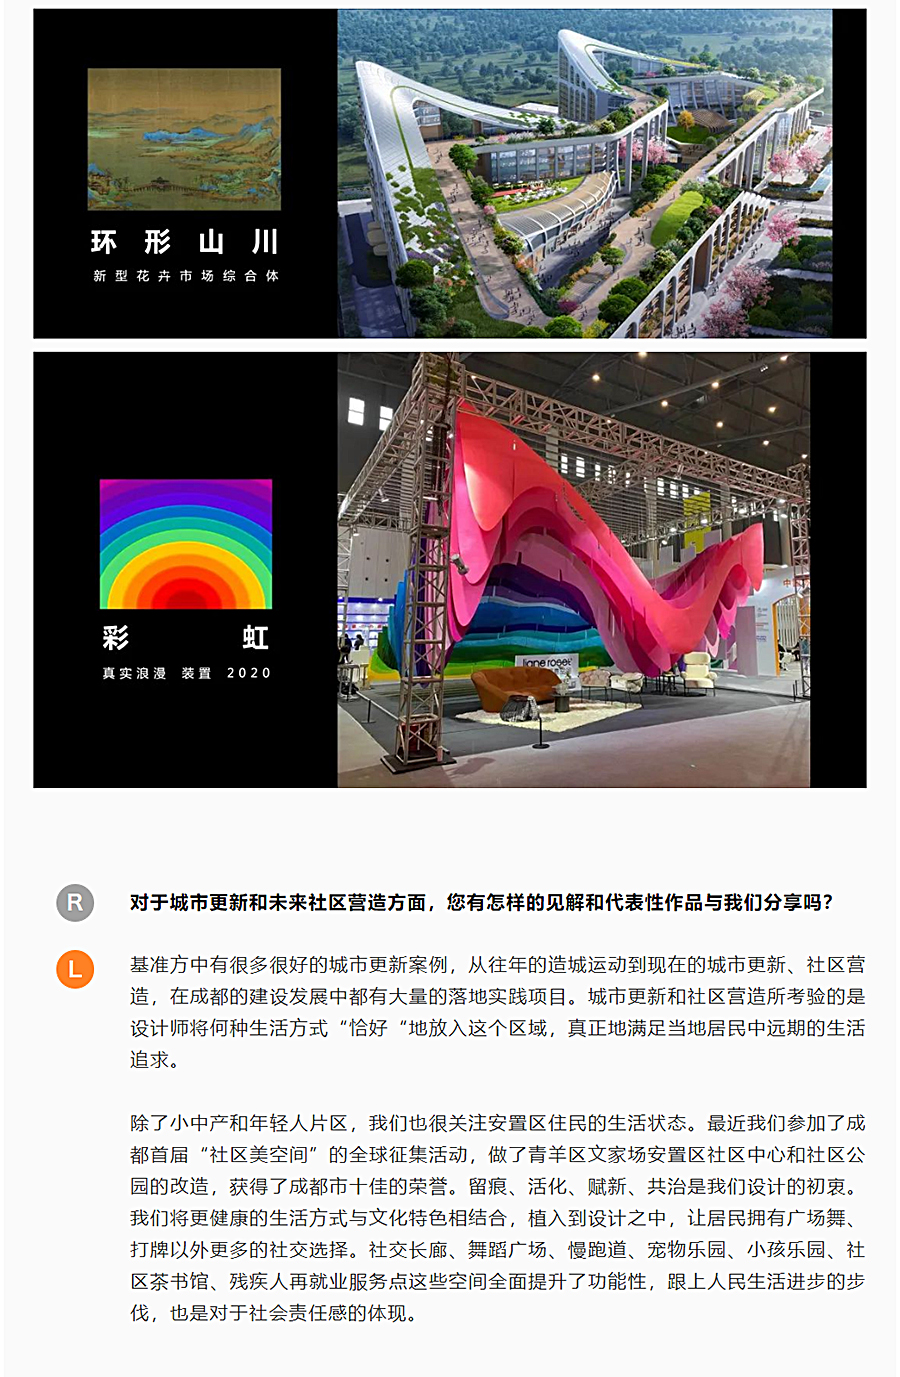 倾谈实录｜用建筑和艺术创作传递能量：对话刘哥舒_0011_图层-12.jpg